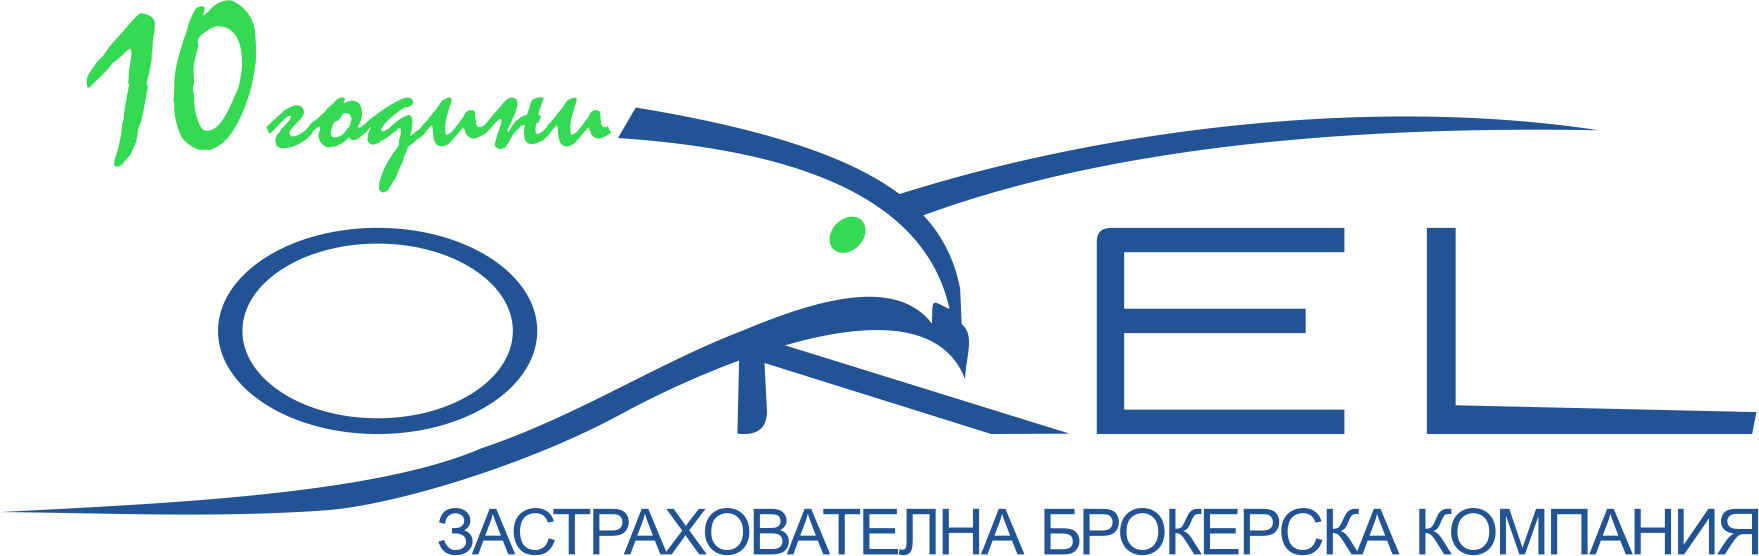 Лого на ЗБК ОРЕЛ ООД